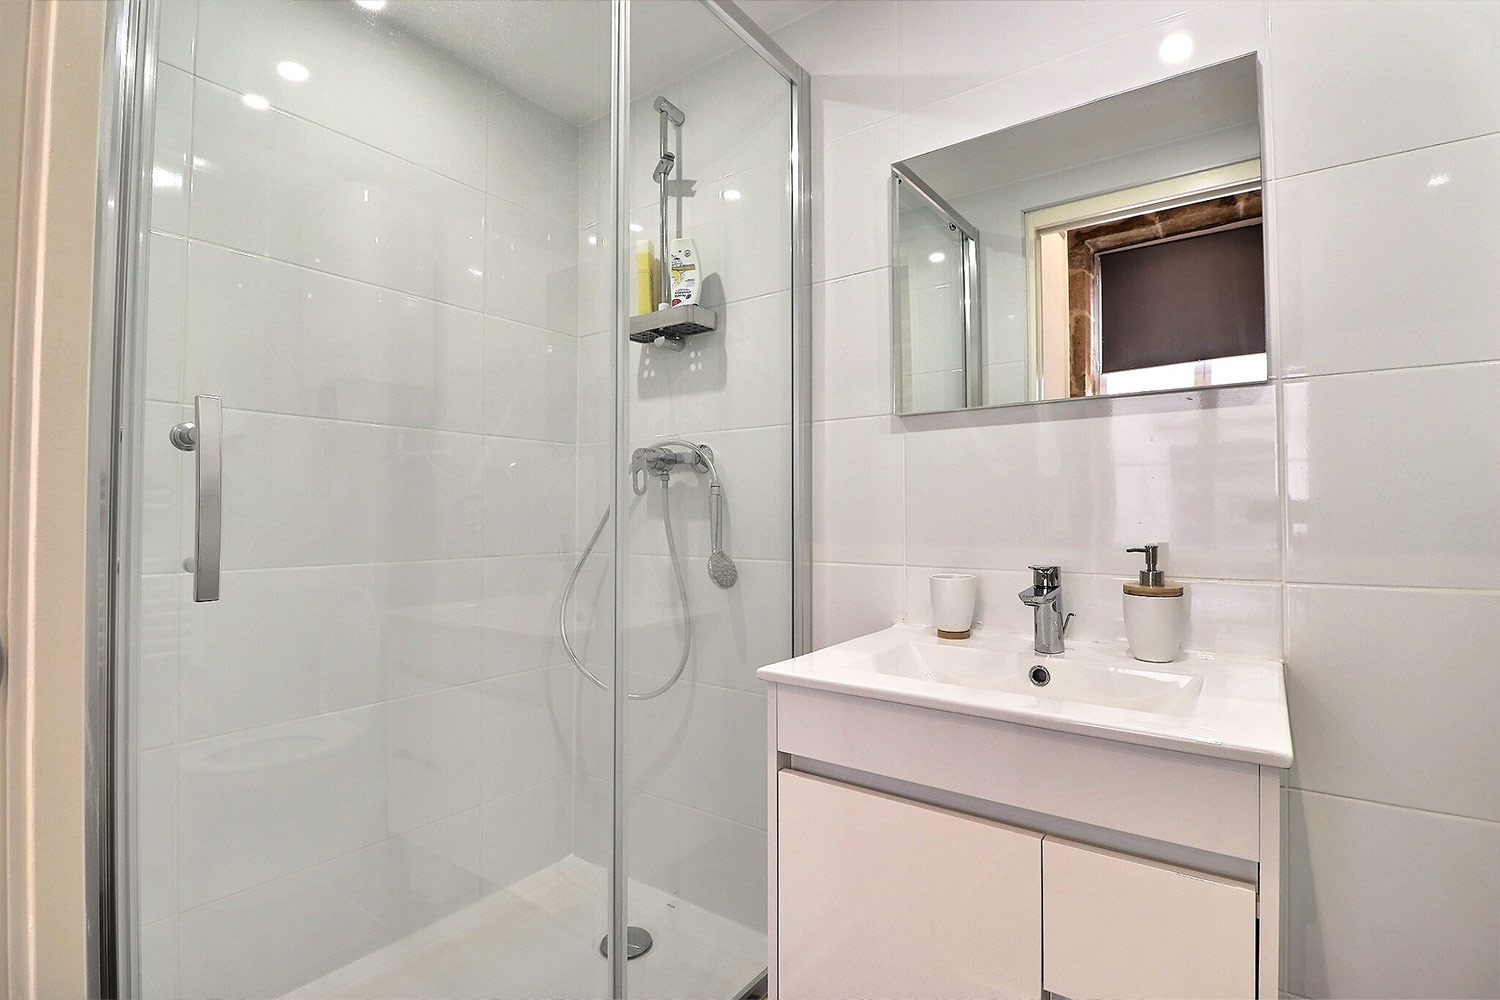 Salle de bain avec douche à l'italienne dans cet appartement à Lyon 5